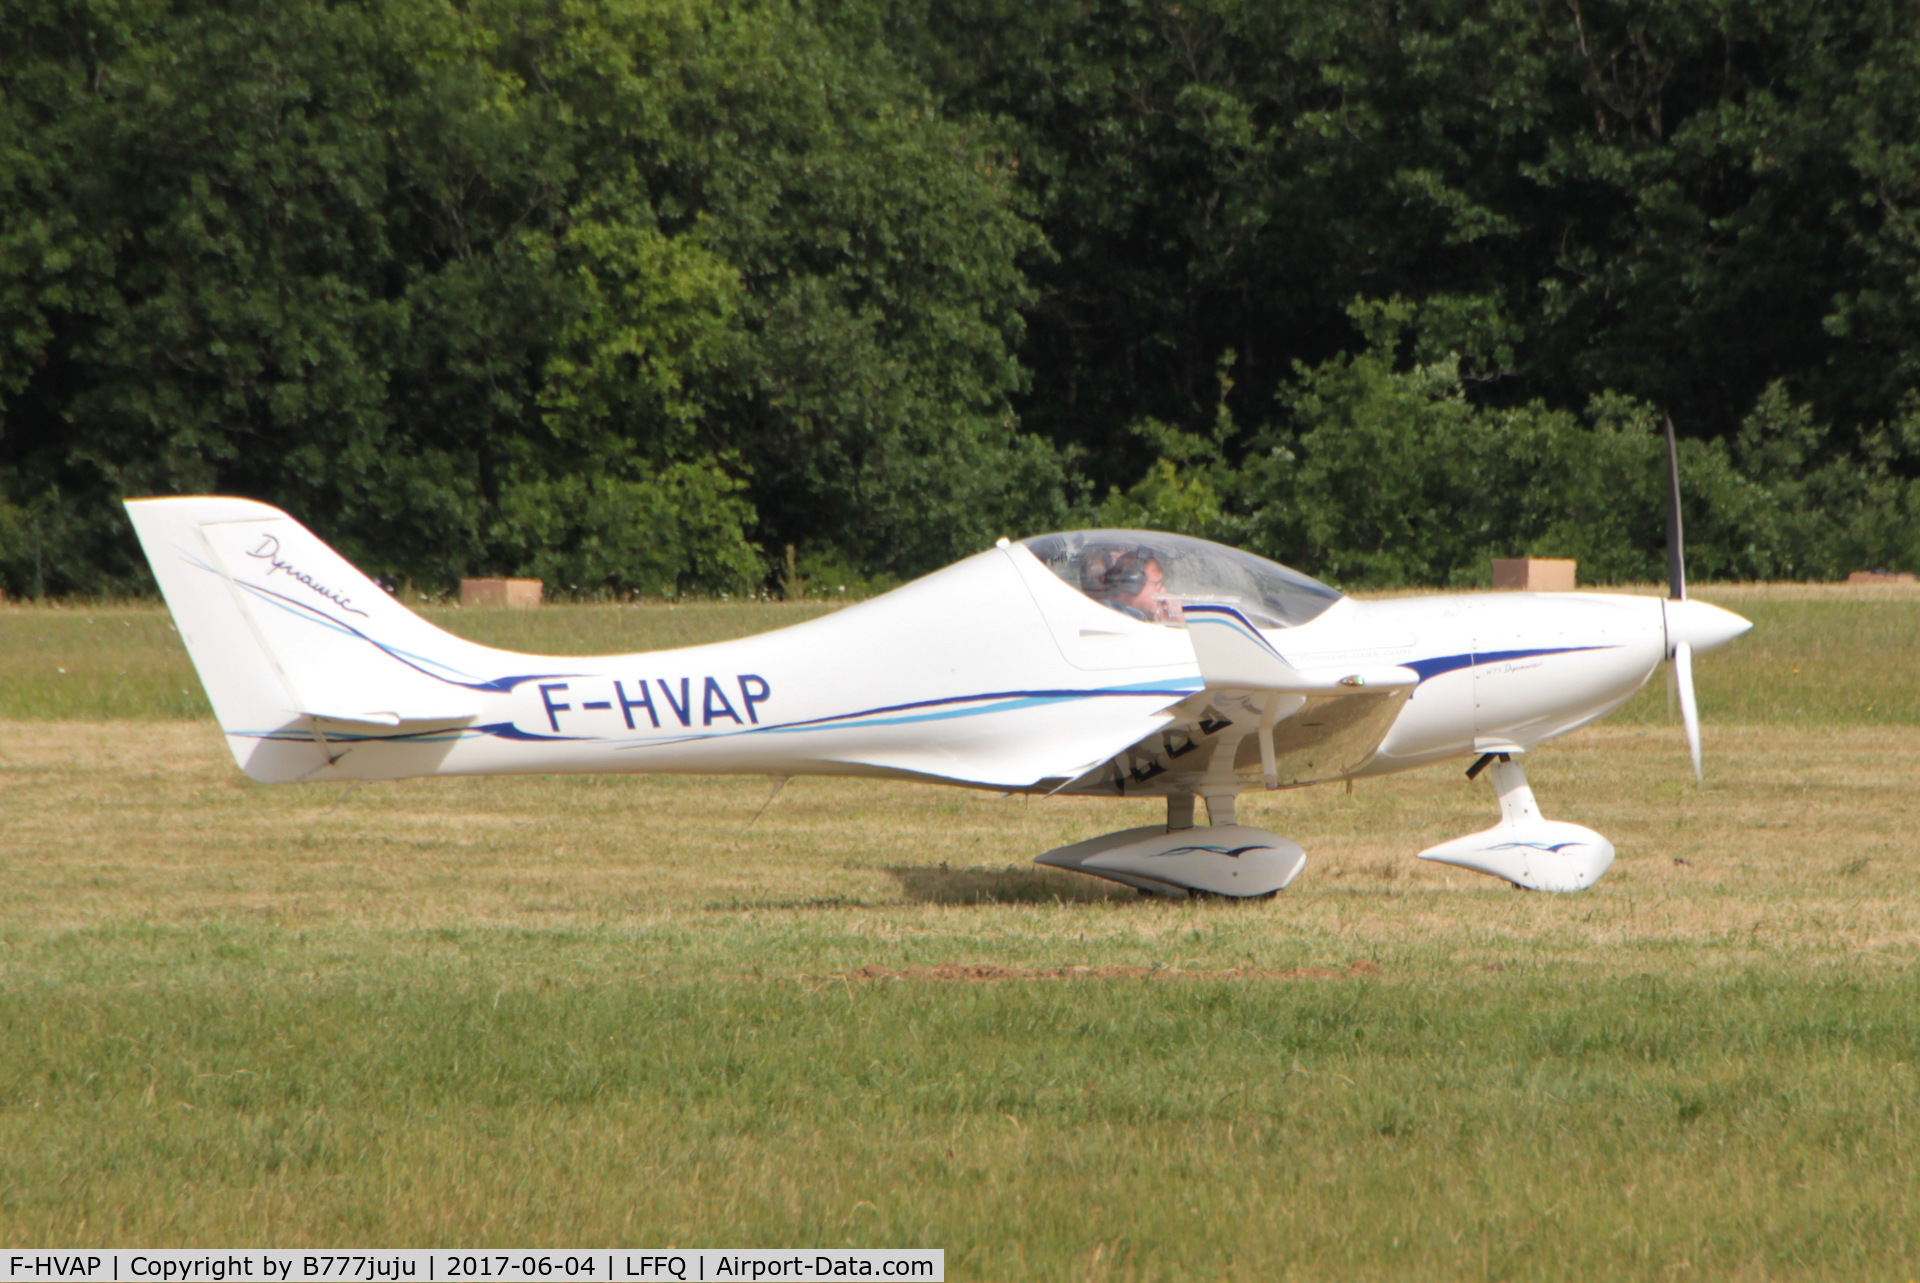 F-HVAP, 2011 Aerospool WT9 Dynamic C/N DY427, at Cerny